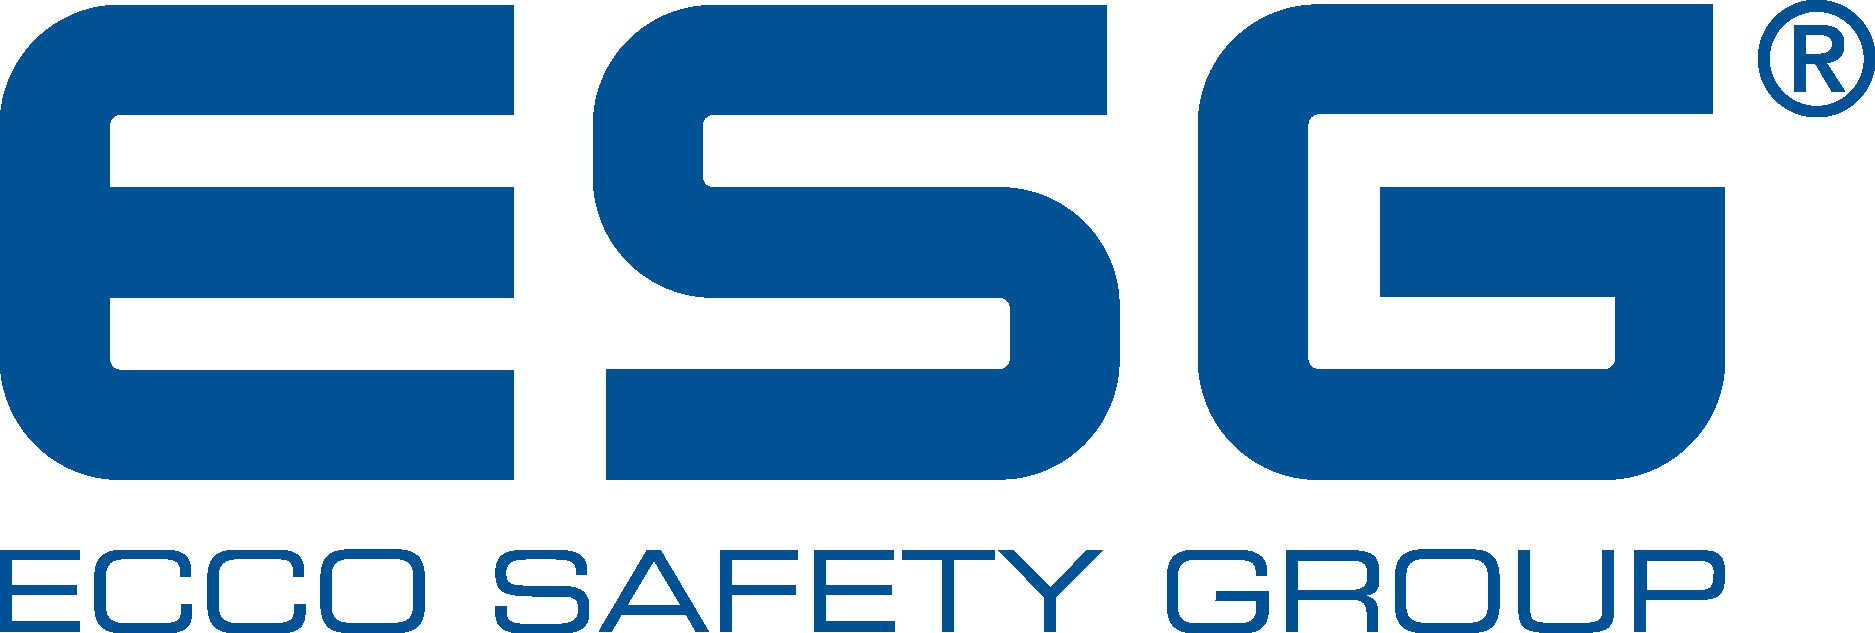 ESG Ecco Safety Group Logo Vector